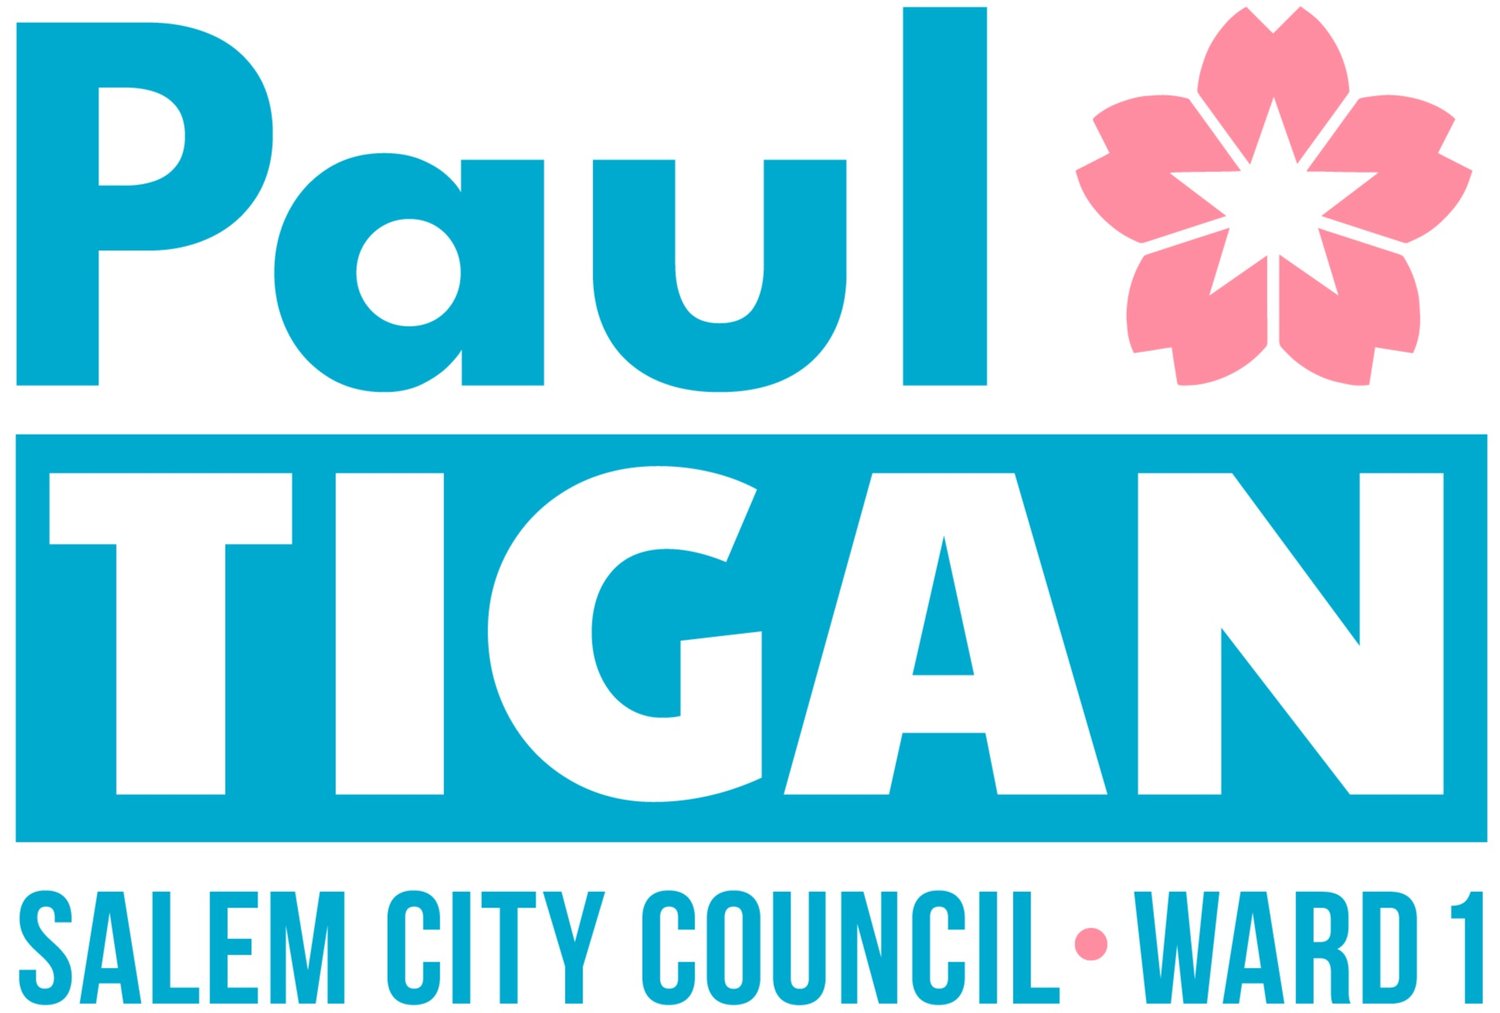 Paul Tigan for Ward 1 City Council